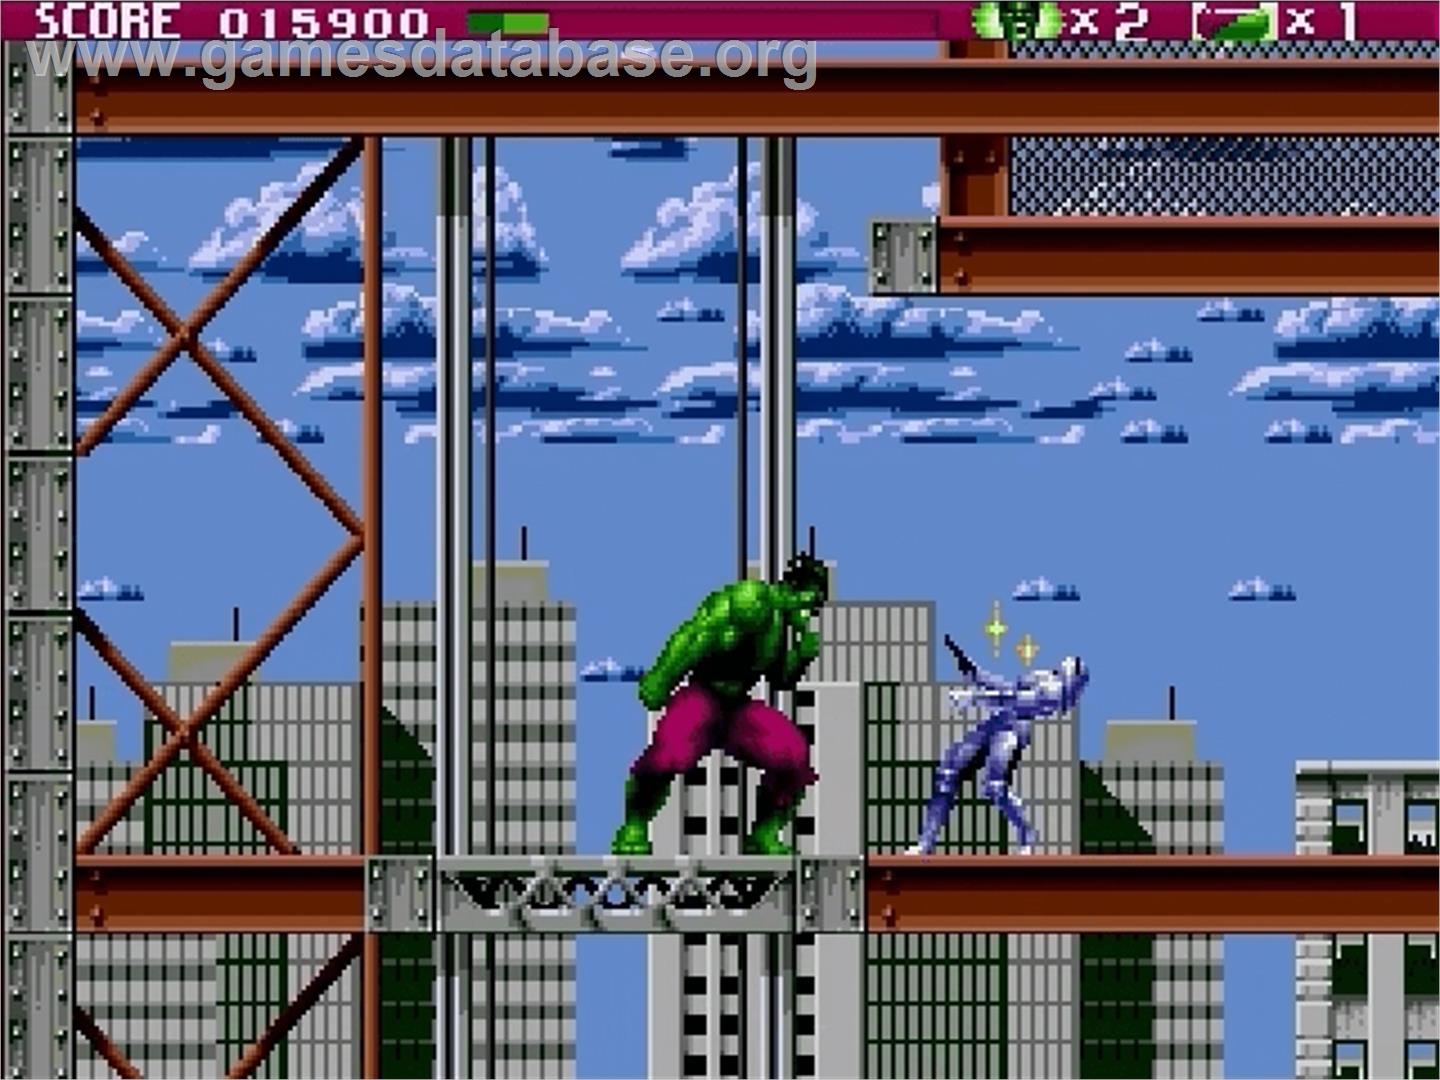 Incredible Hulk, The - Sega Genesis - Artwork - In Game